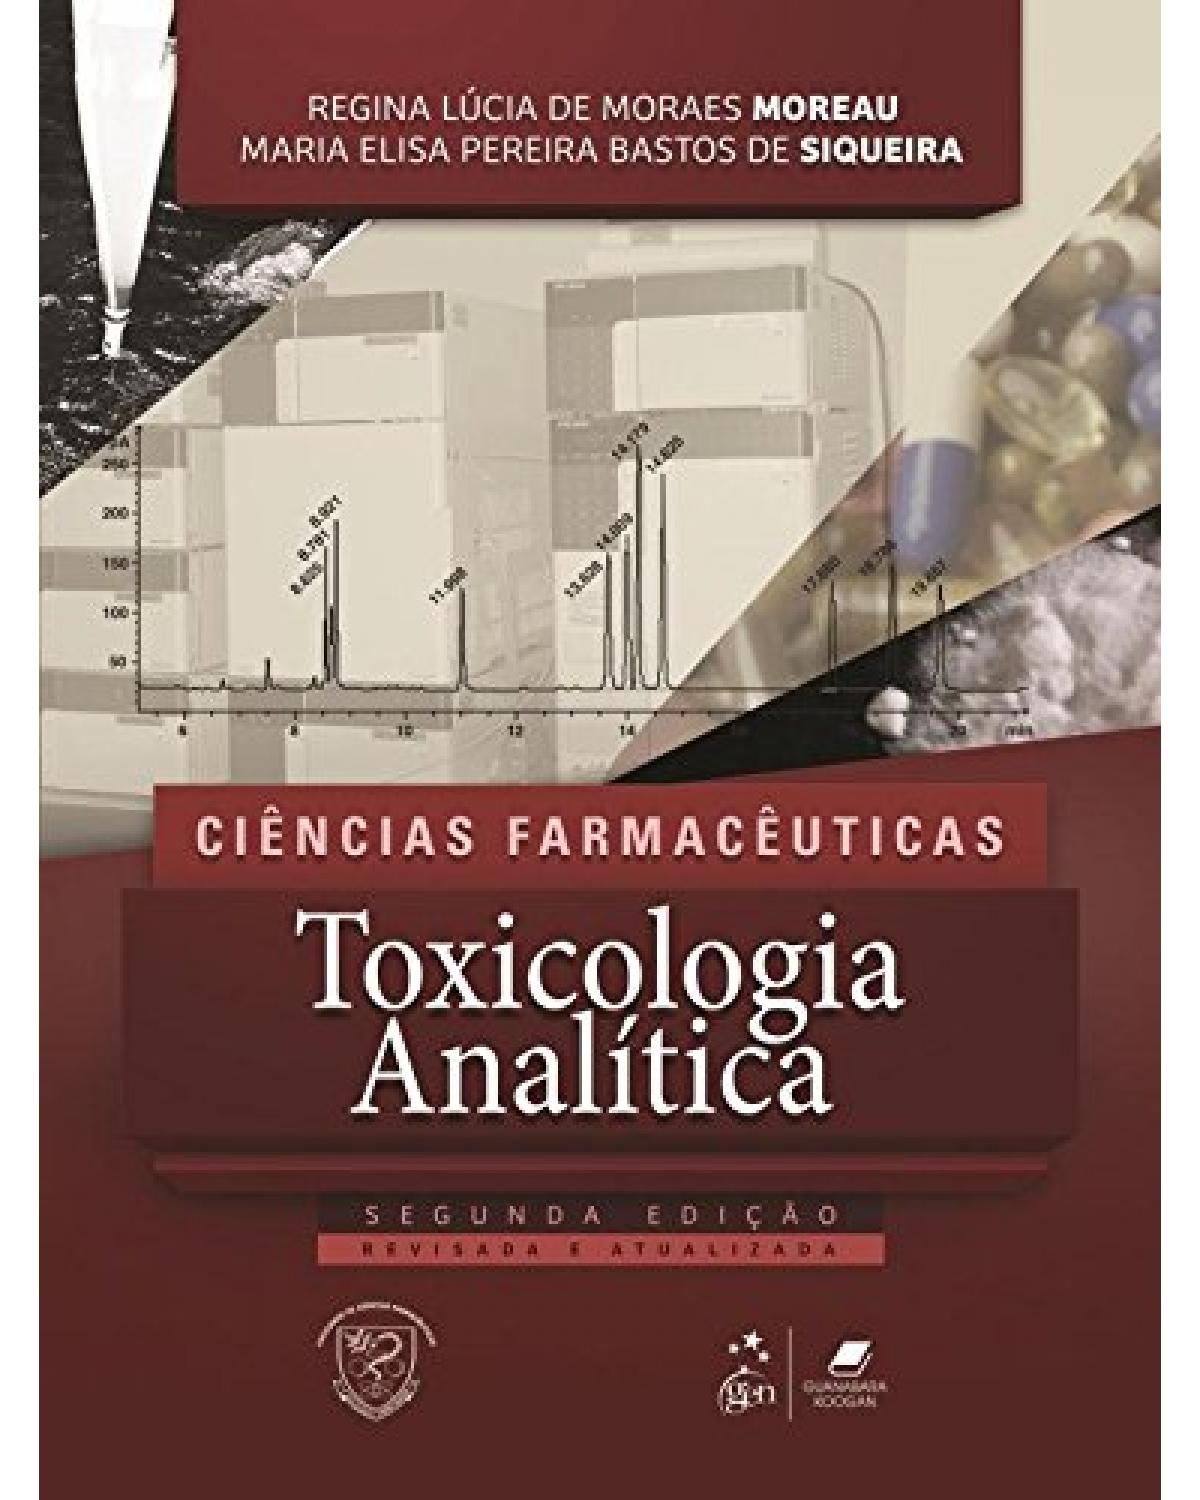 Toxicologia analítica - 2ª Edição | 2016